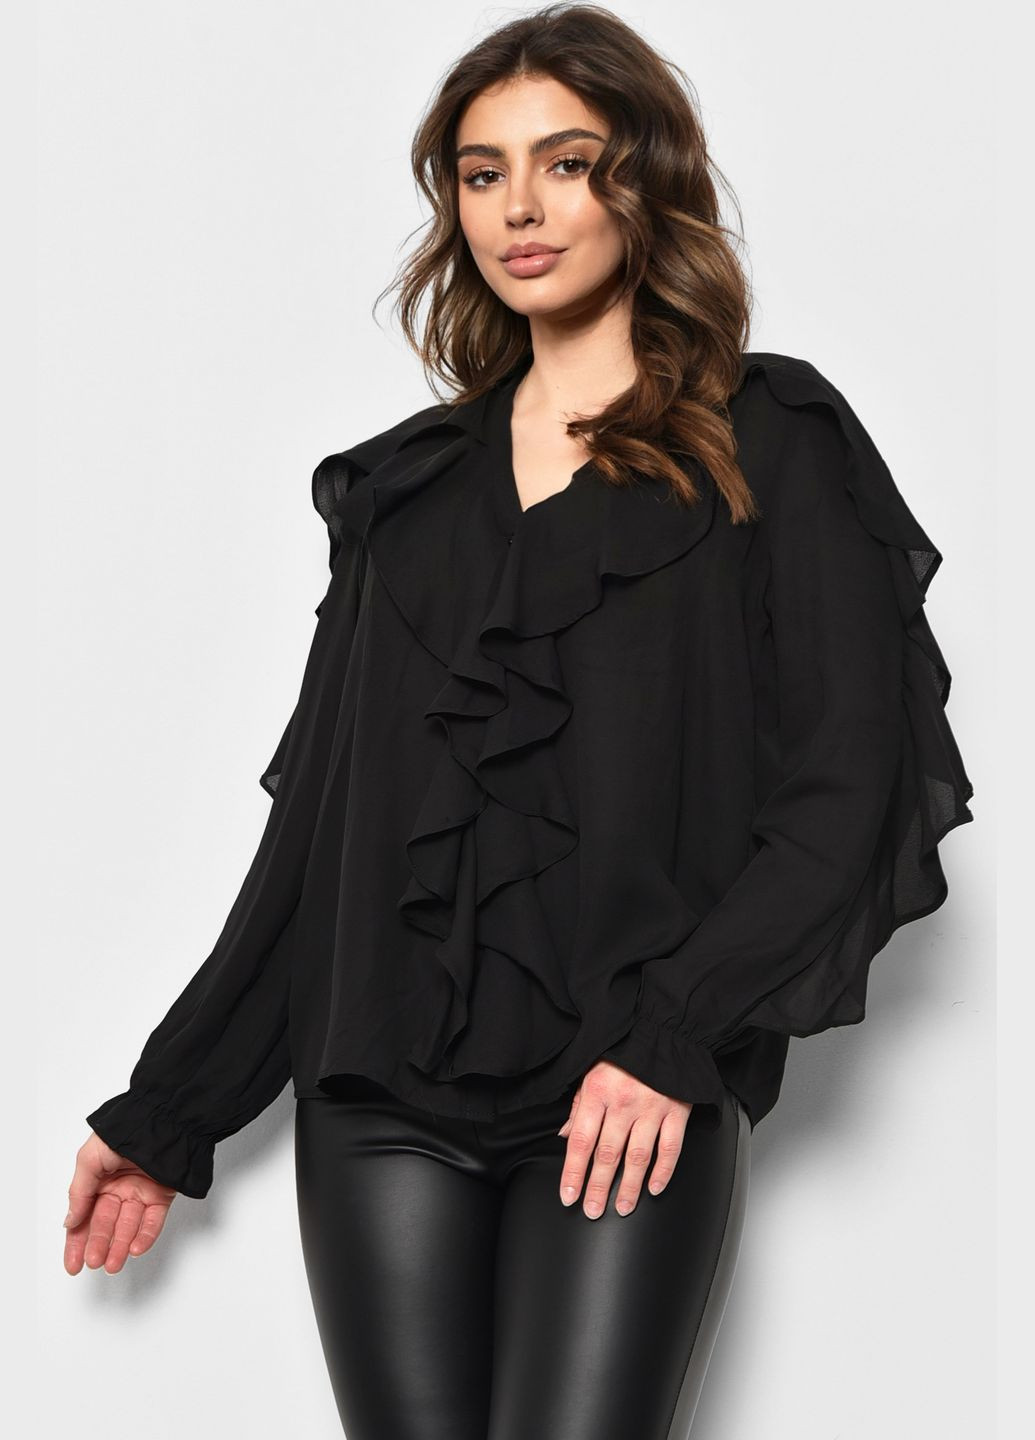 Черная демисезонная блуза женская черного цвета с баской Let's Shop